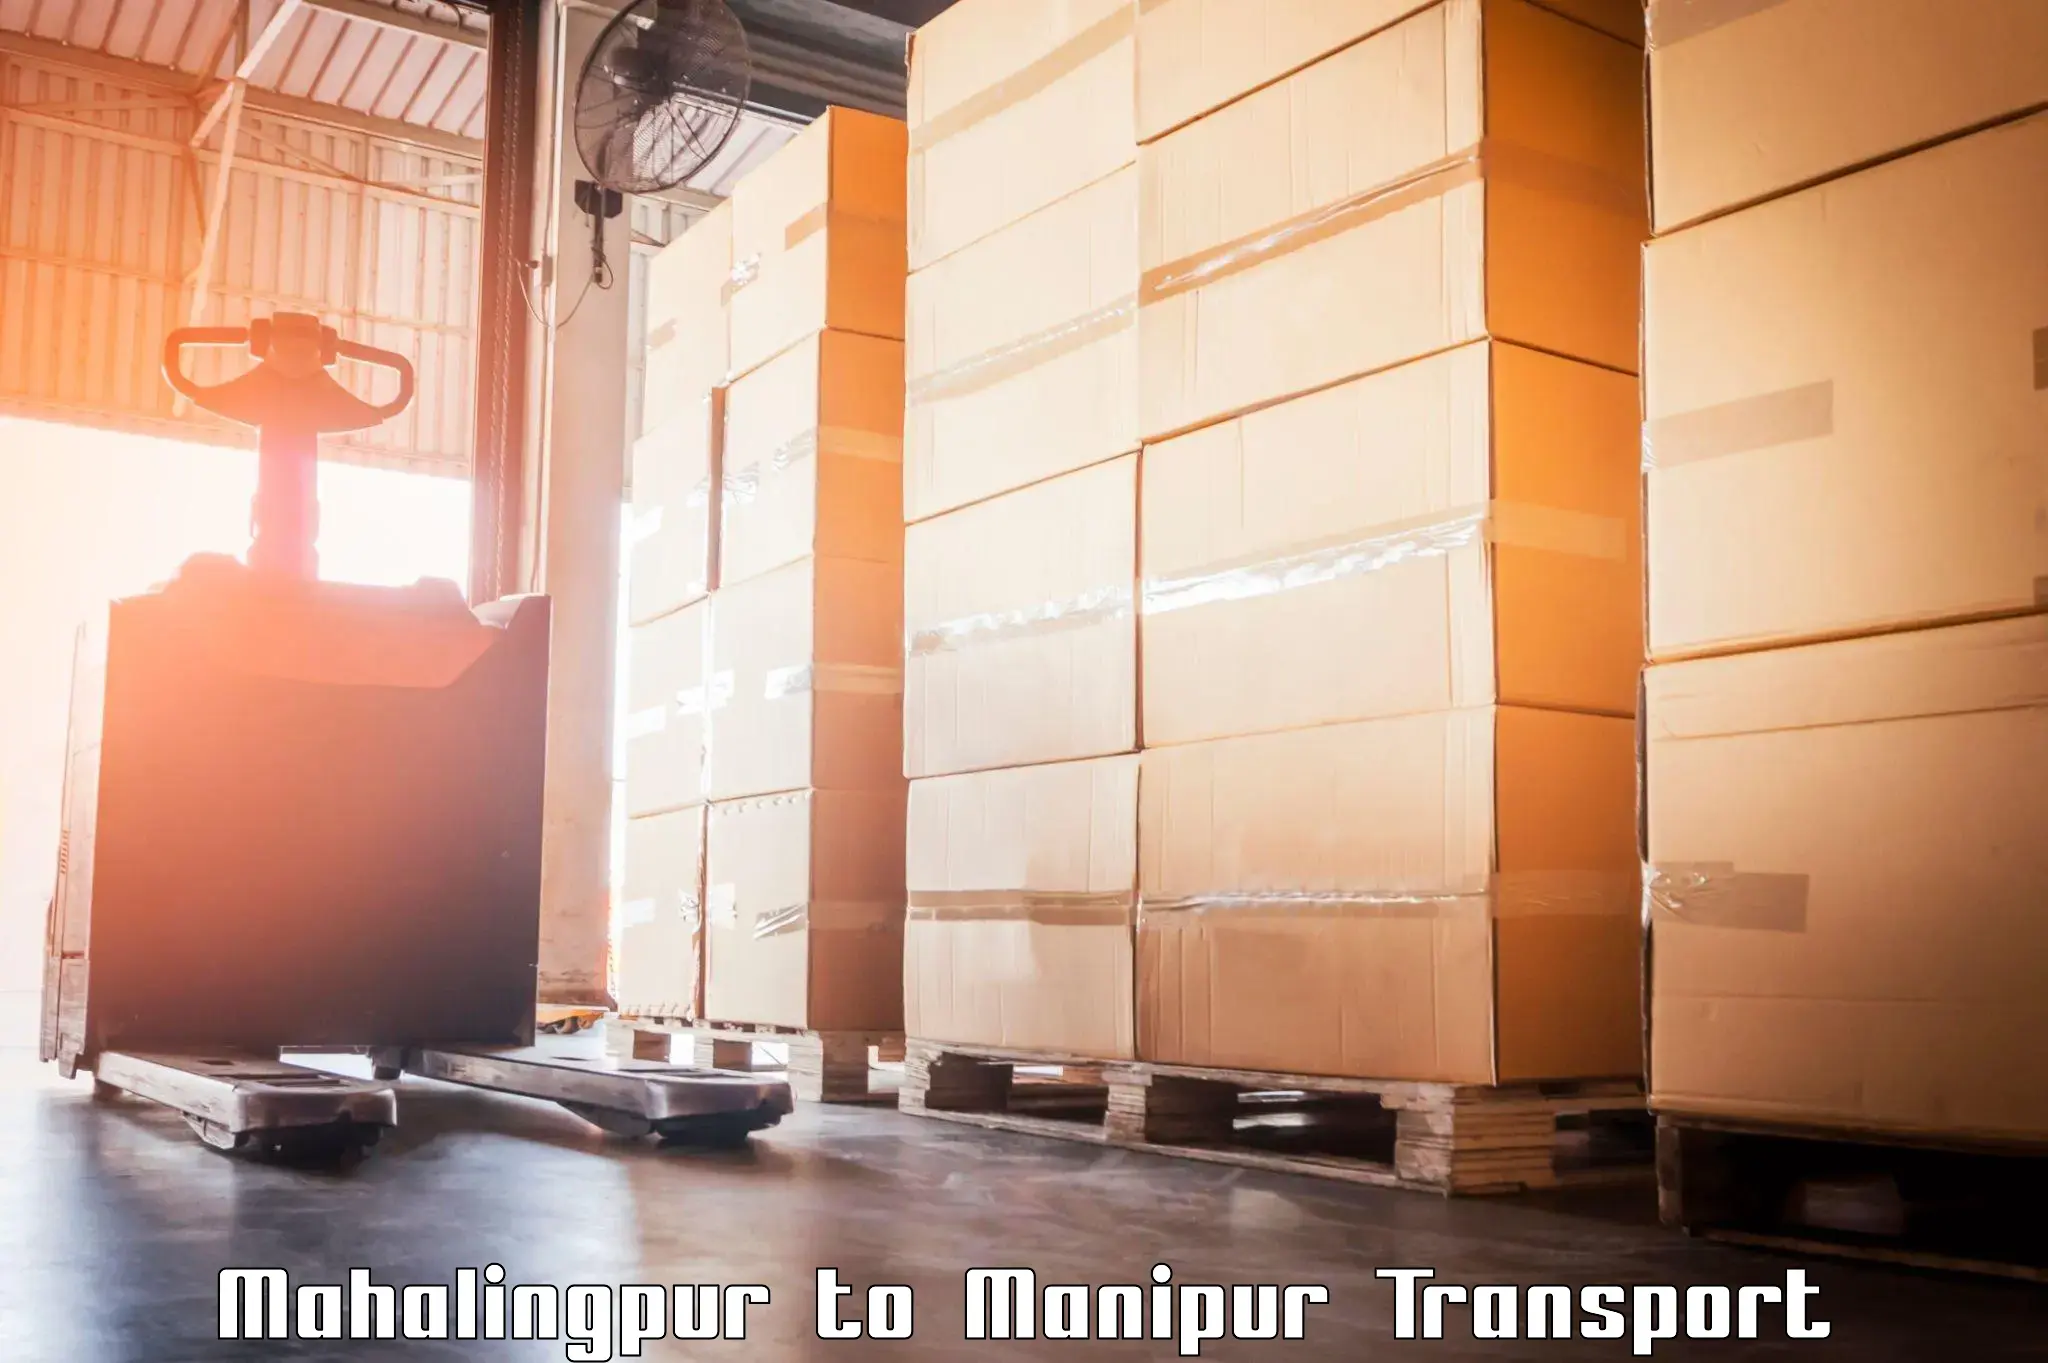 Cargo transport services in Mahalingpur to Kaptipada